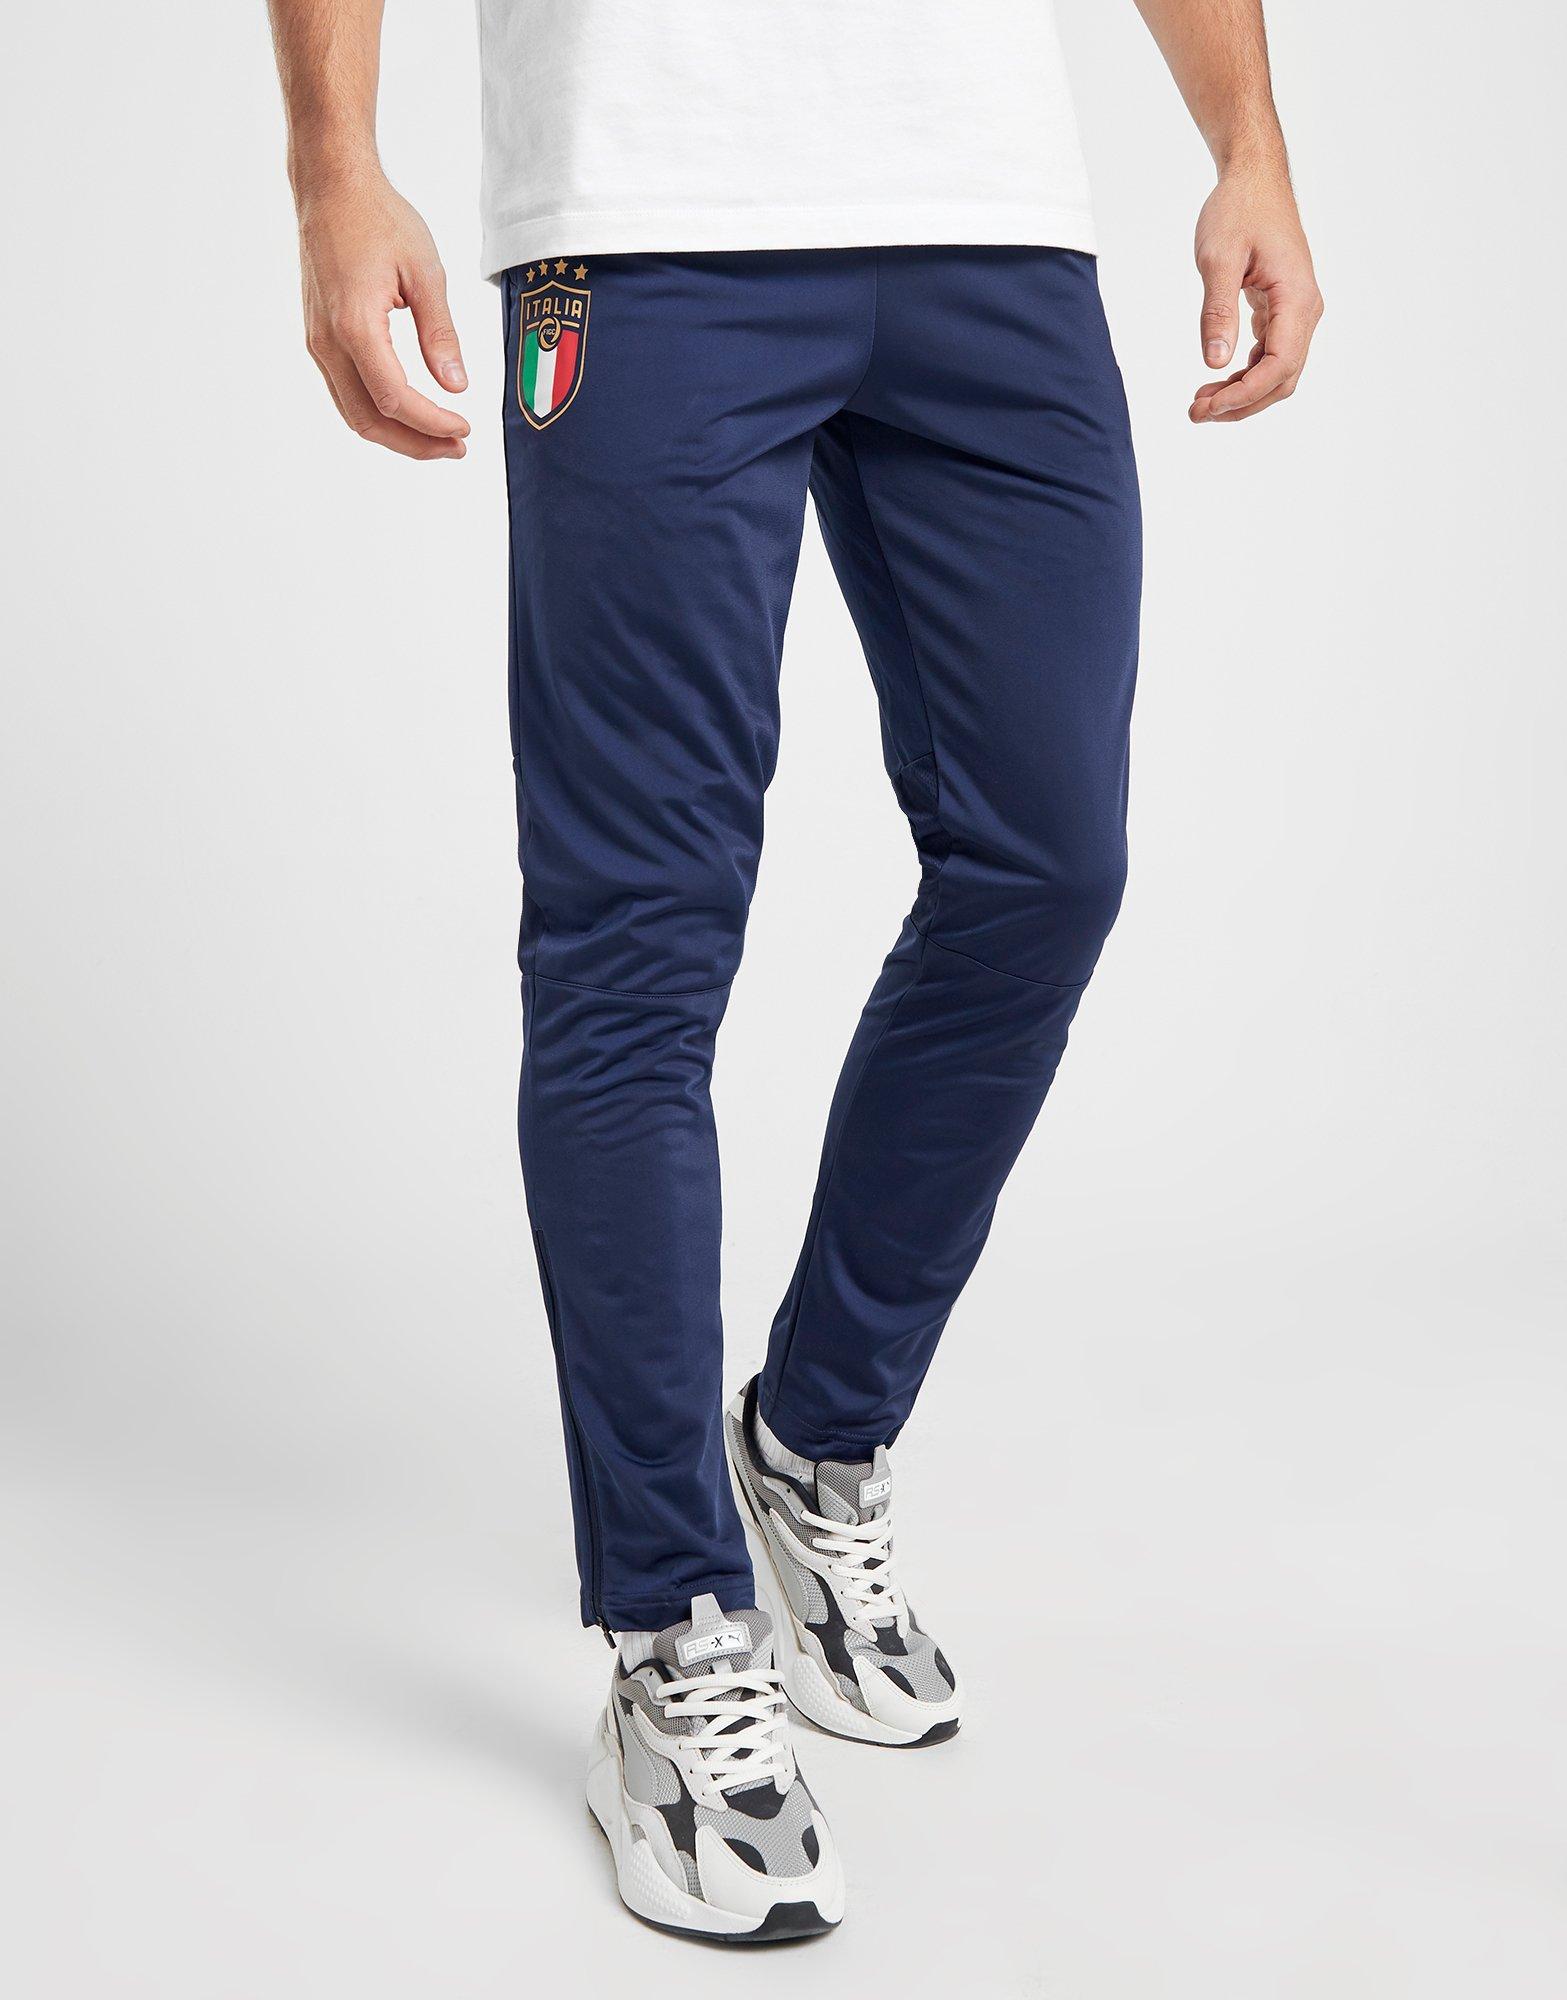 puma italia track pants